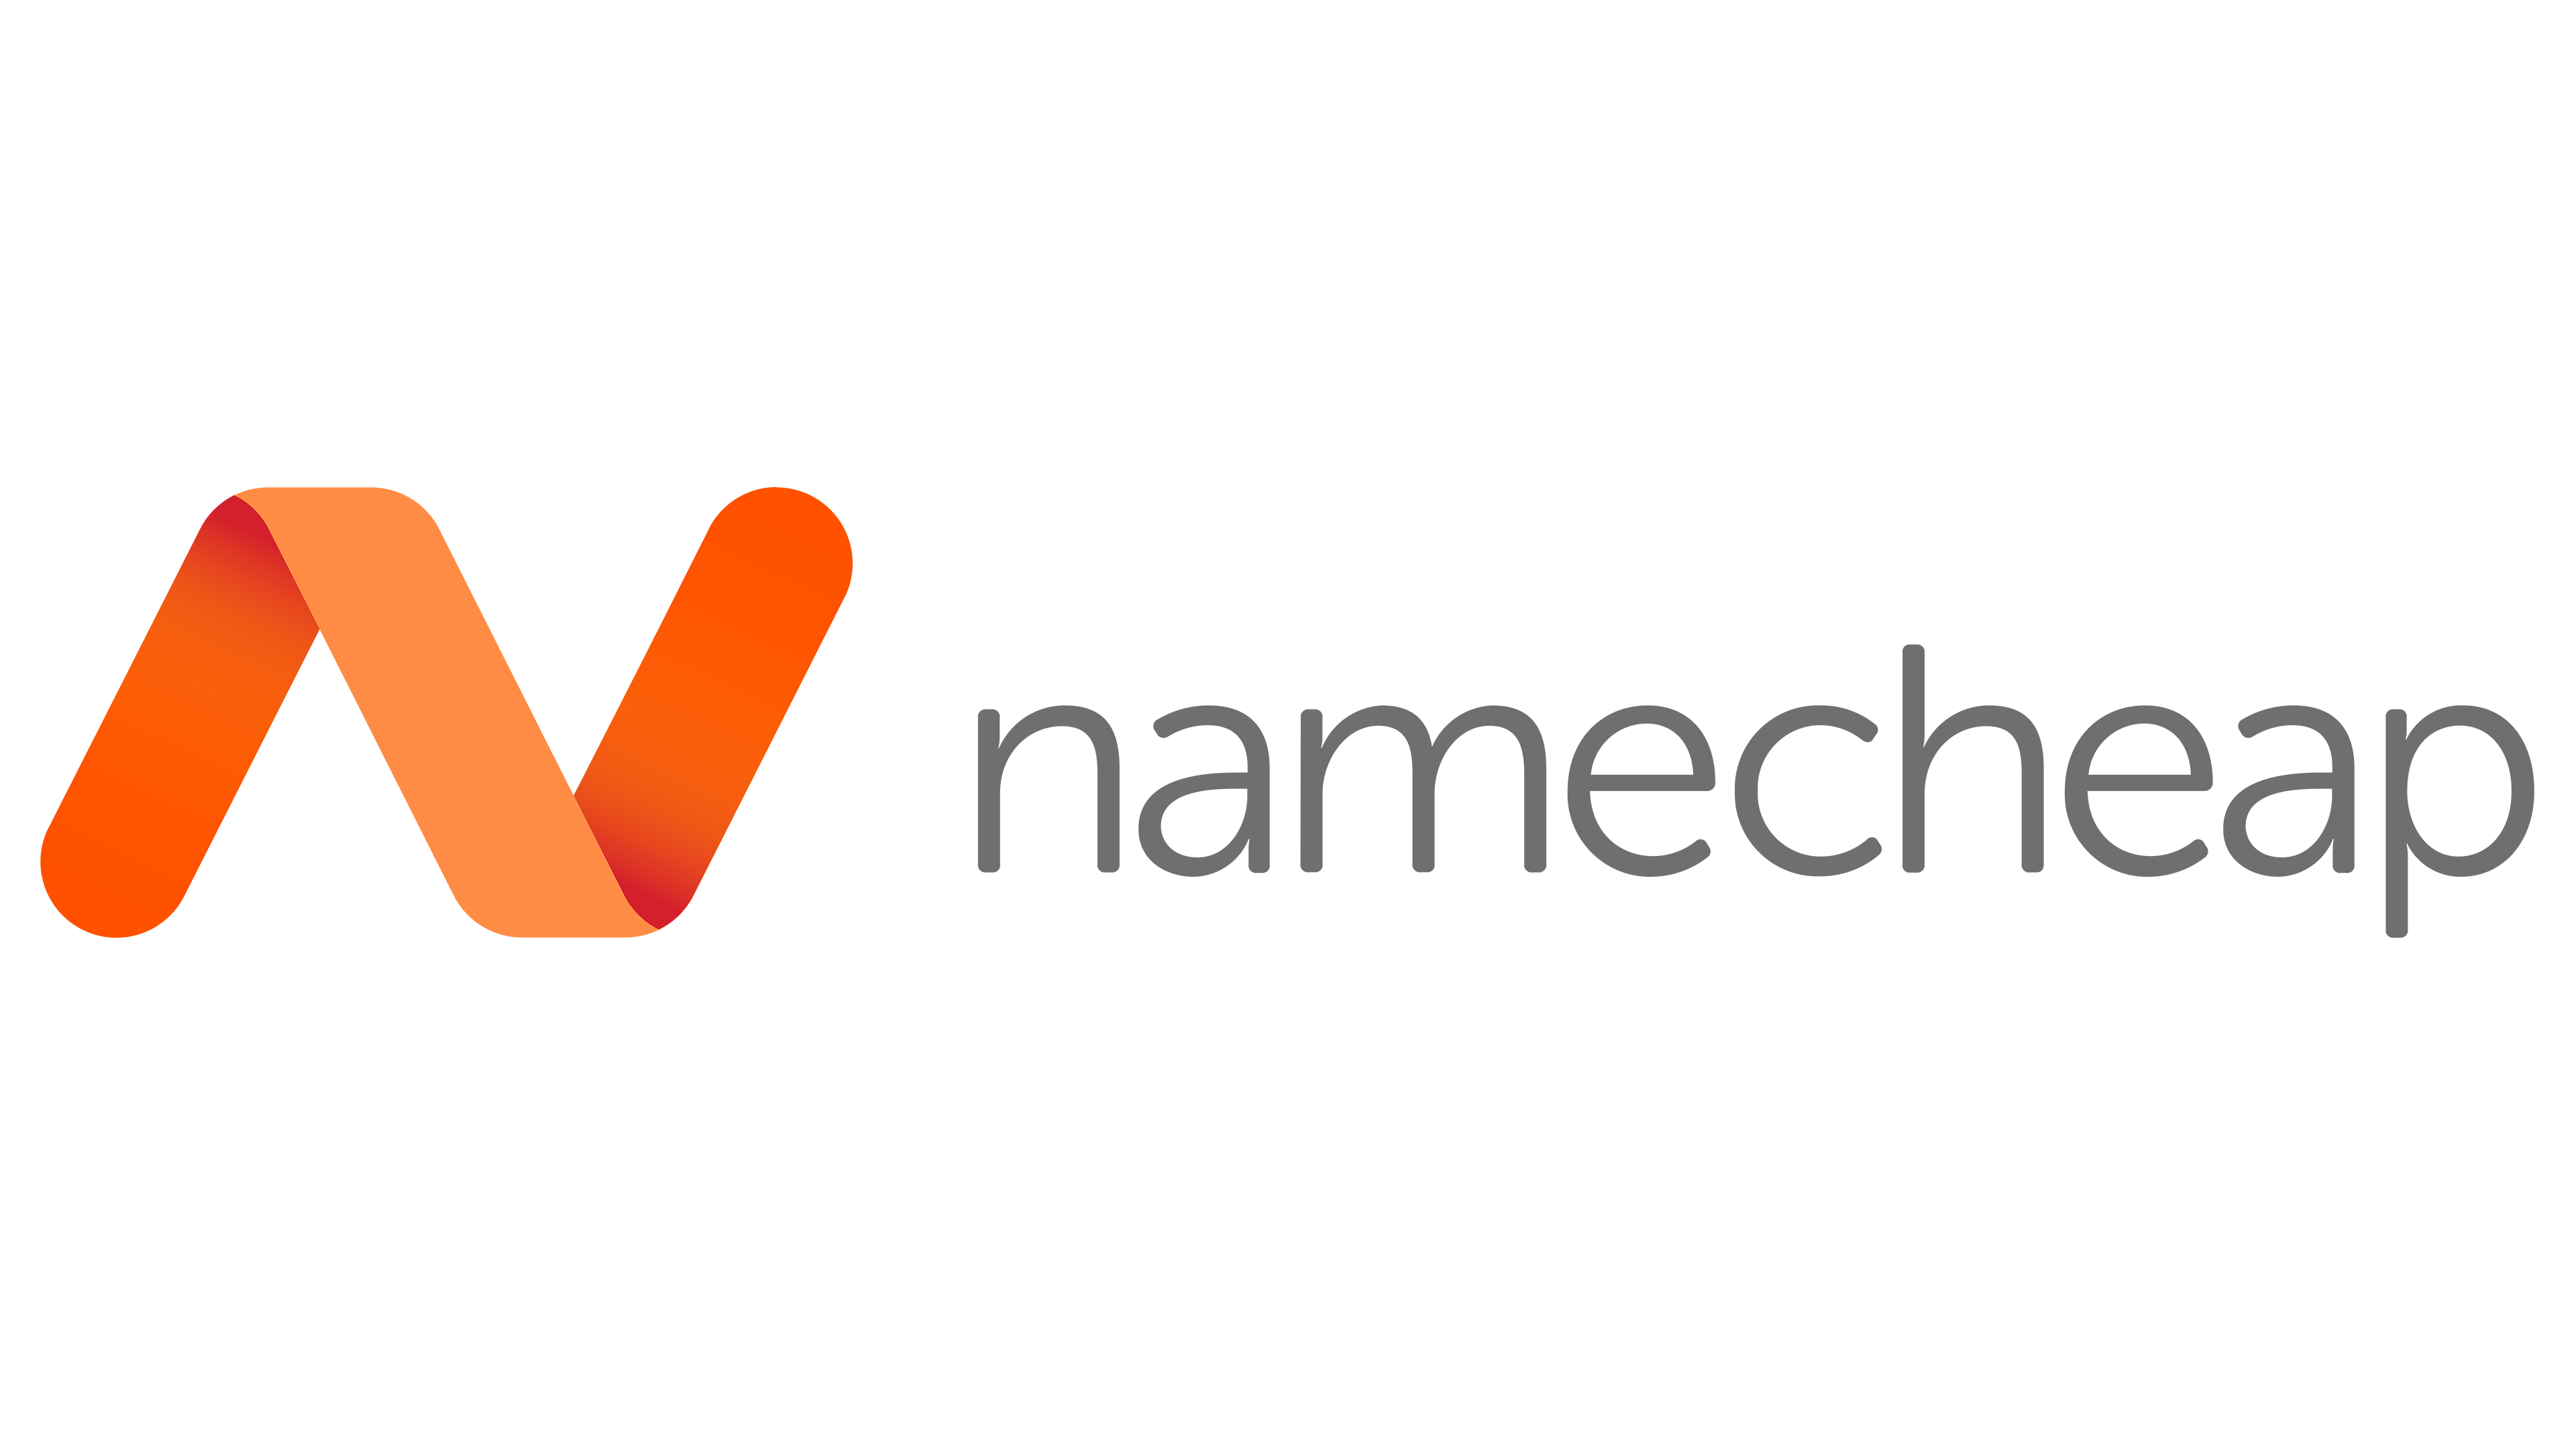 A logo with a written text of "namecheap"